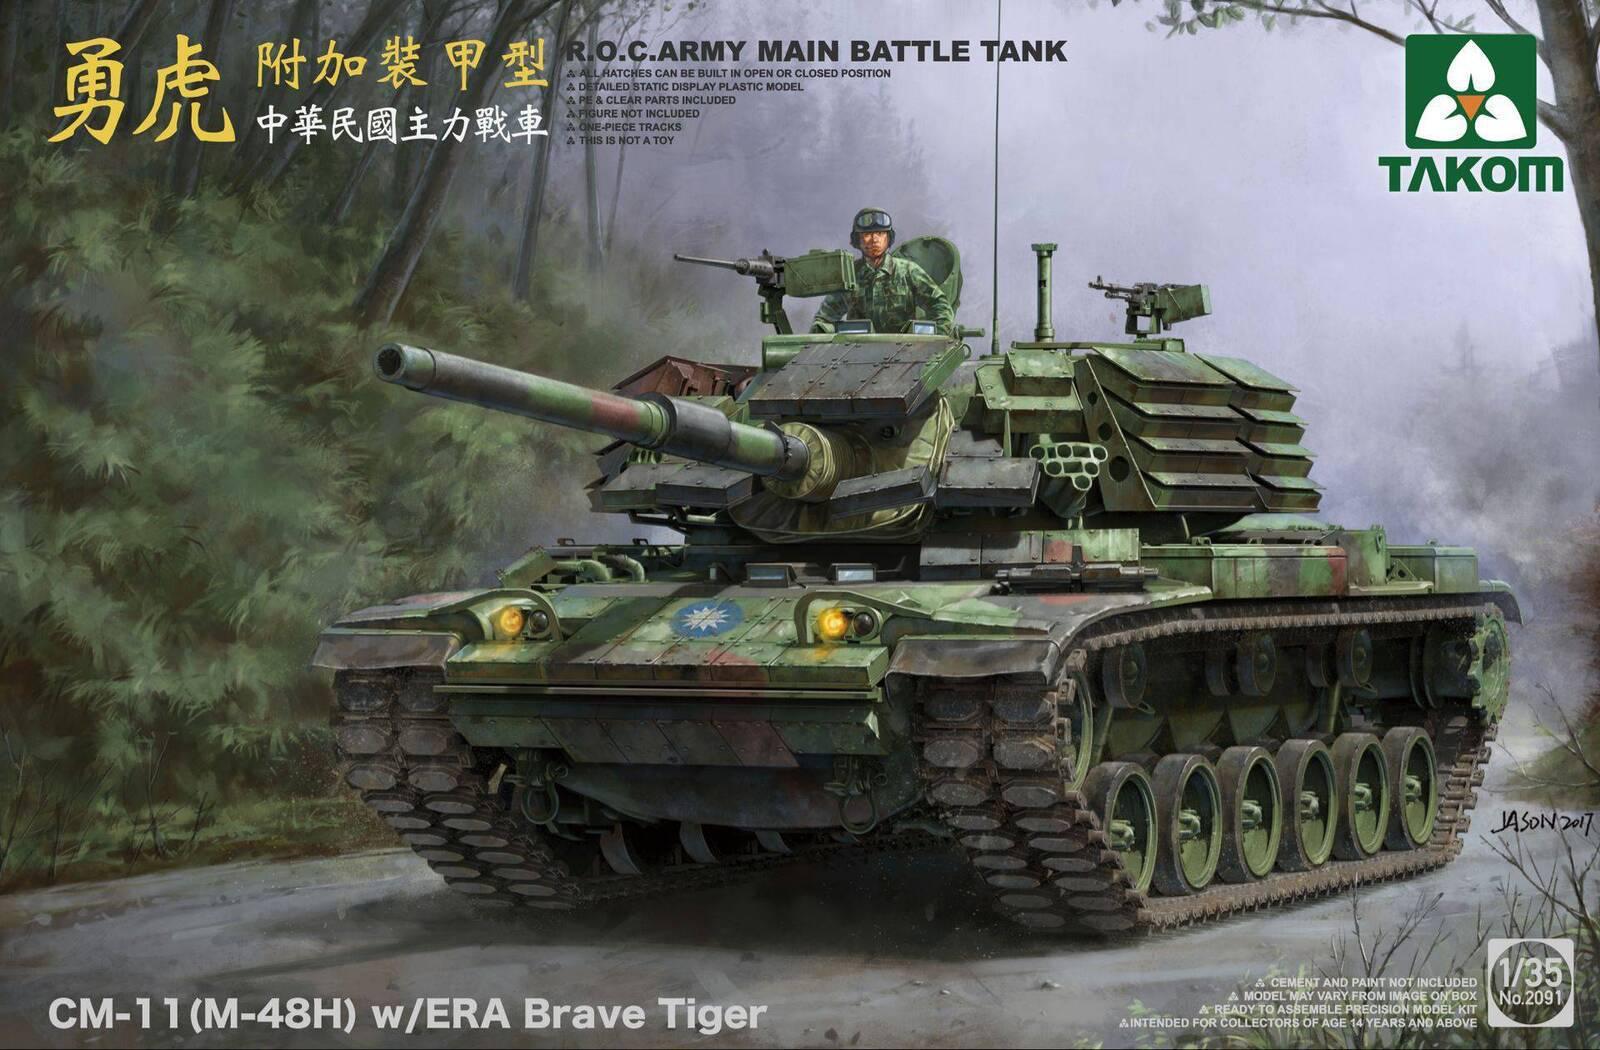 Takom 2091 1/35 R.O.C.ARMY CM-11 (M-48H) w/ERA Brave Tiger MBT Plastic Model Kit